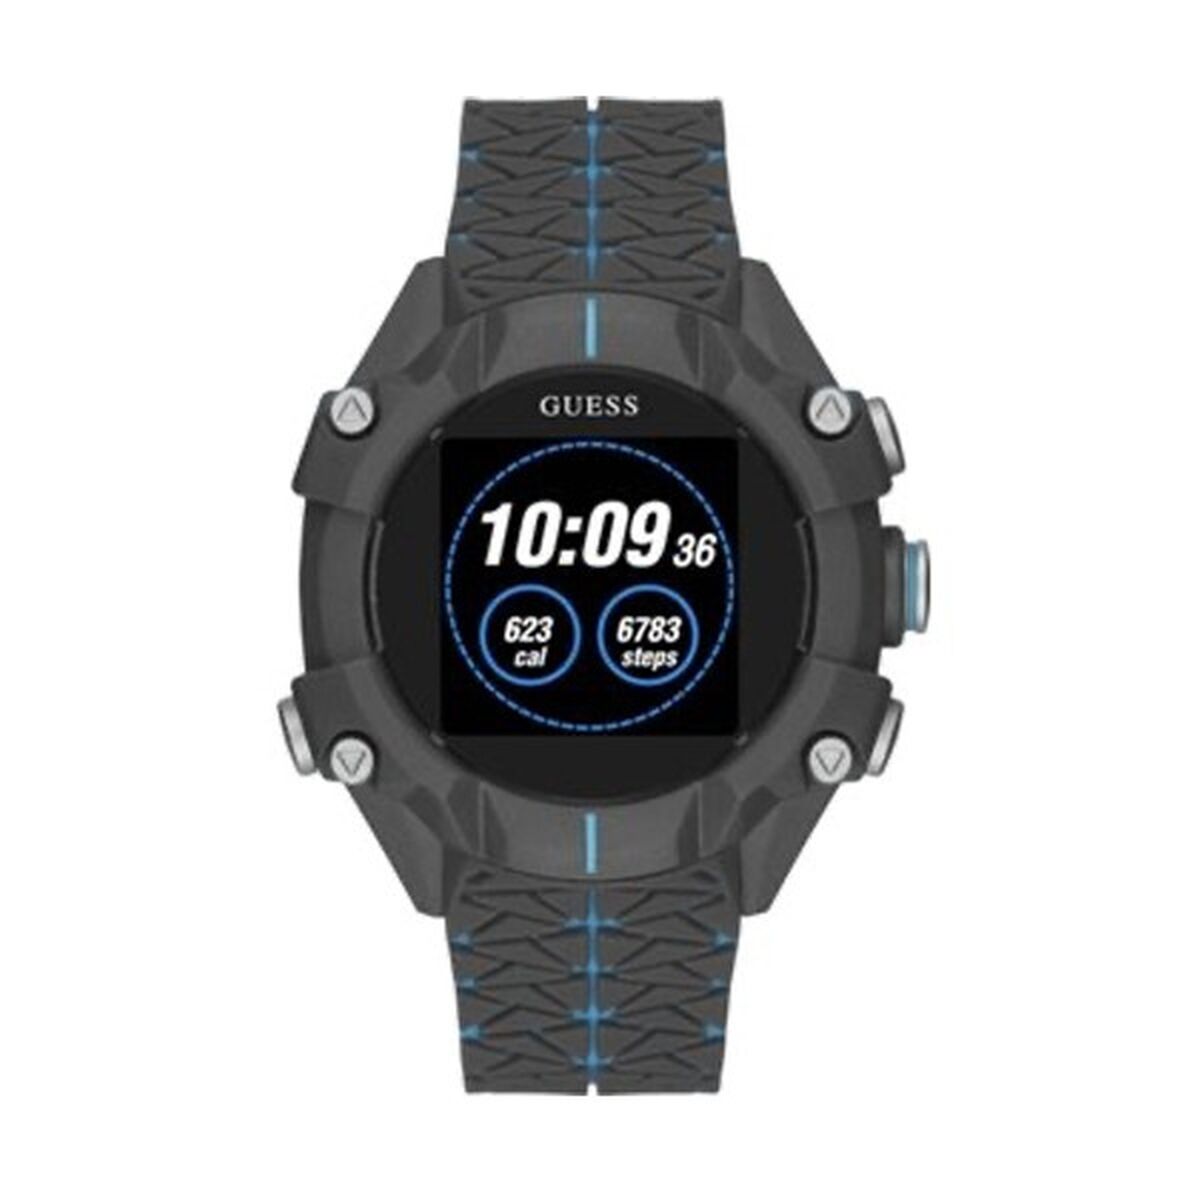 Kaufe Smartwatch Guess C3001G3 bei AWK Flagship um € 283.00